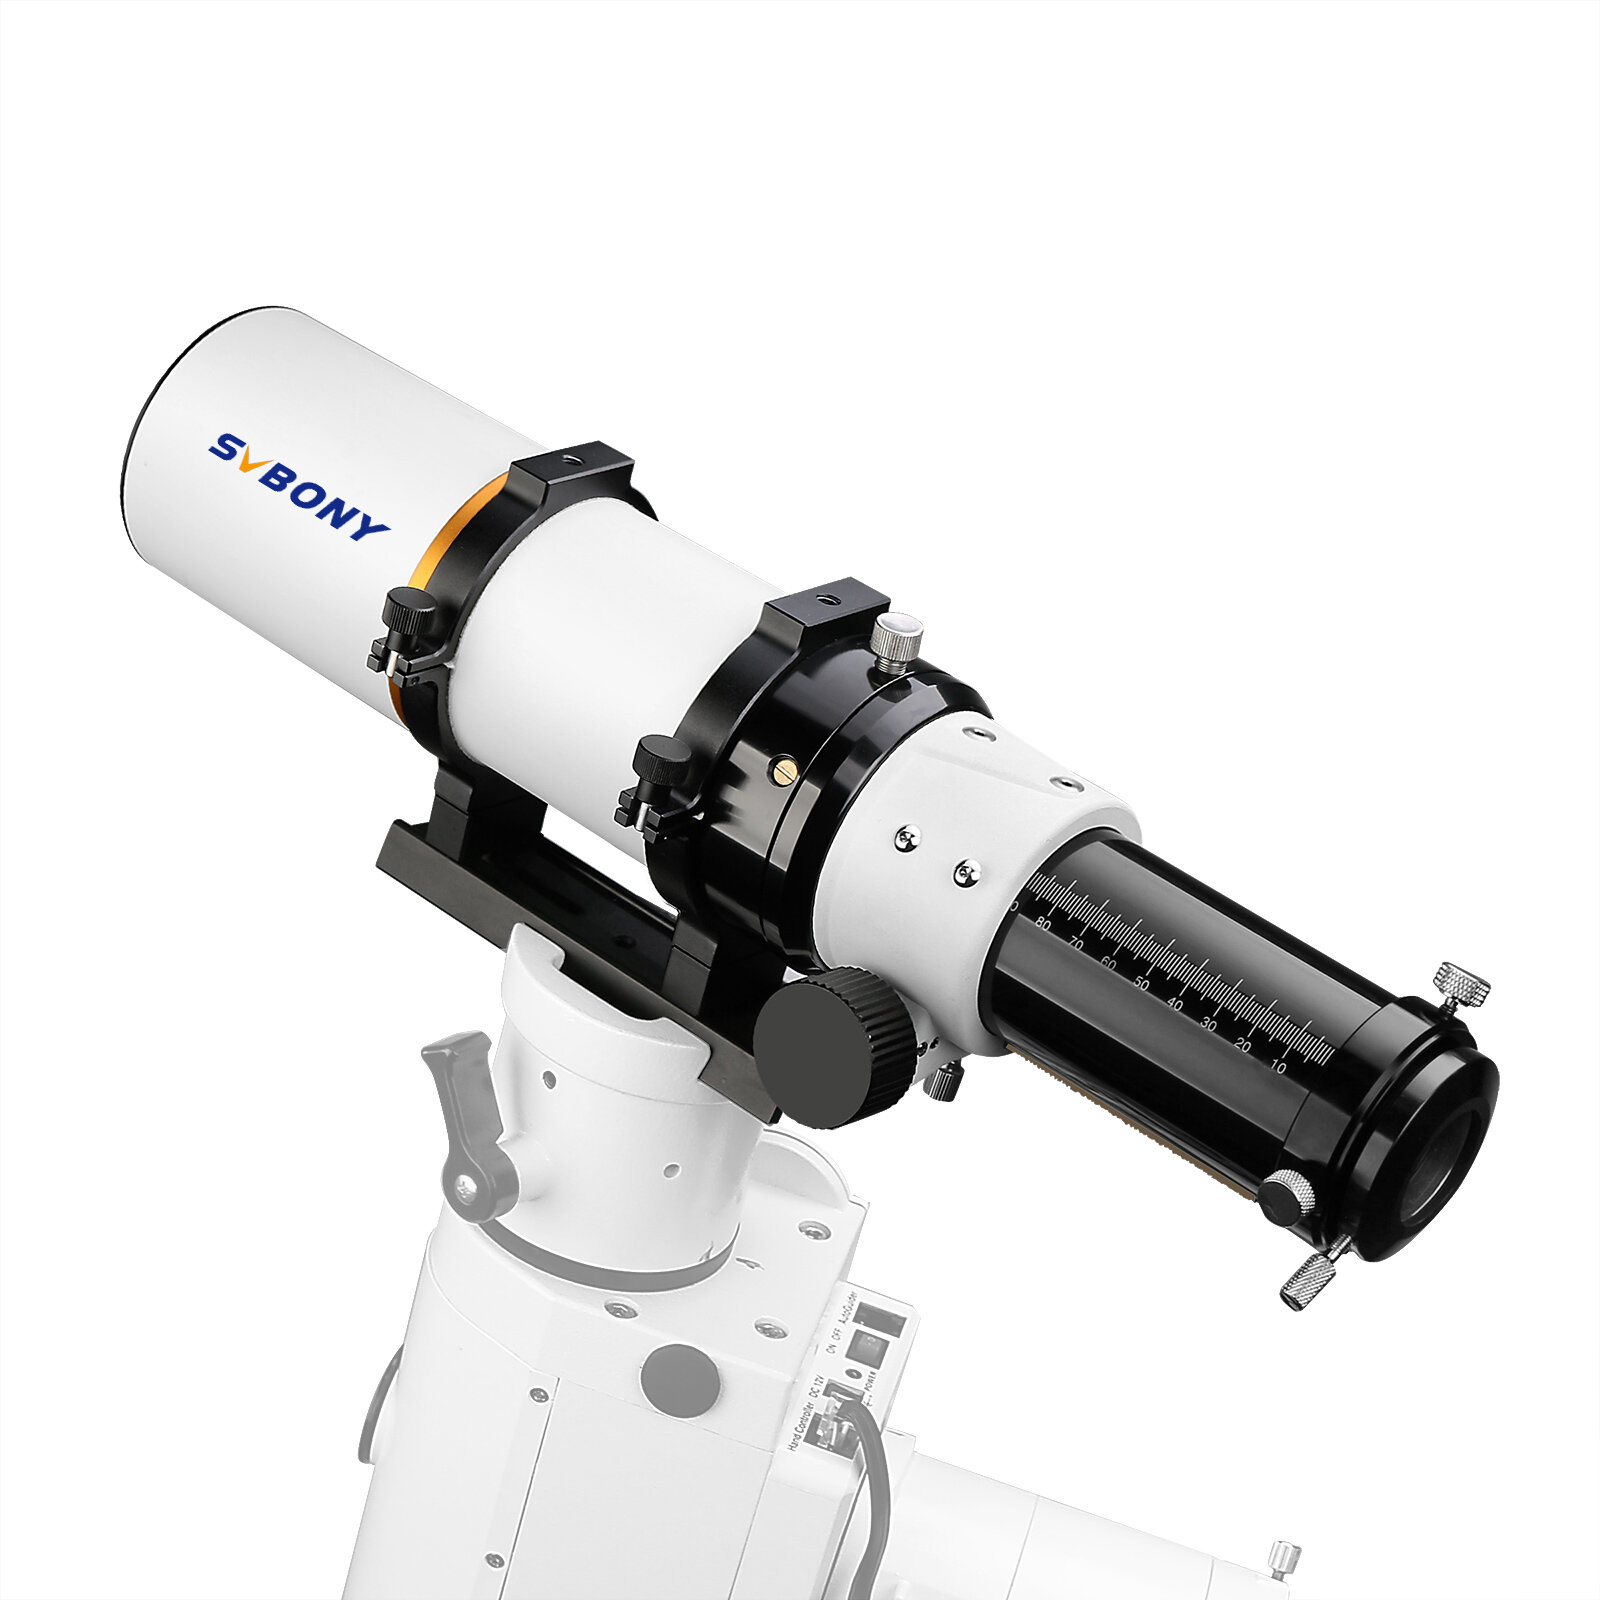 Αστρονομικό τηλεσκόπιο ρεφράκτορα SVBONY F9359A White70/420 F6 (OTA) με κύριο καθρέφτη αλουμινίου και φακό ED για φωτογραφία στη φύση και κατασκήνωση.